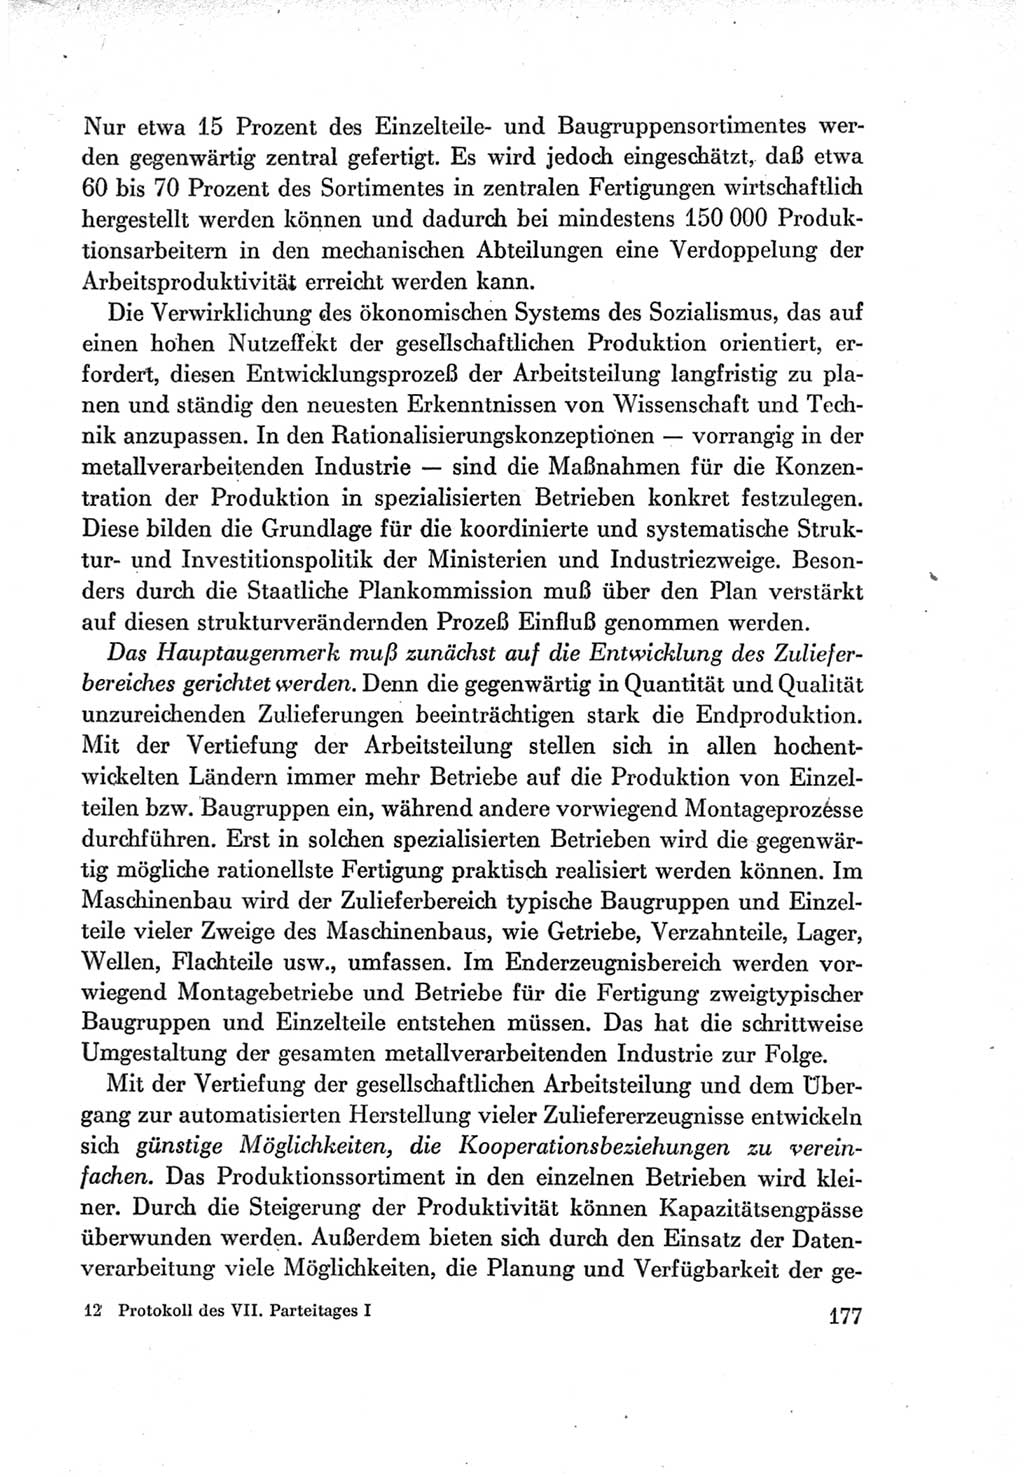 Protokoll der Verhandlungen des Ⅶ. Parteitages der Sozialistischen Einheitspartei Deutschlands (SED) [Deutsche Demokratische Republik (DDR)] 1967, Band Ⅰ, Seite 177 (Prot. Verh. Ⅶ. PT SED DDR 1967, Bd. Ⅰ, S. 177)